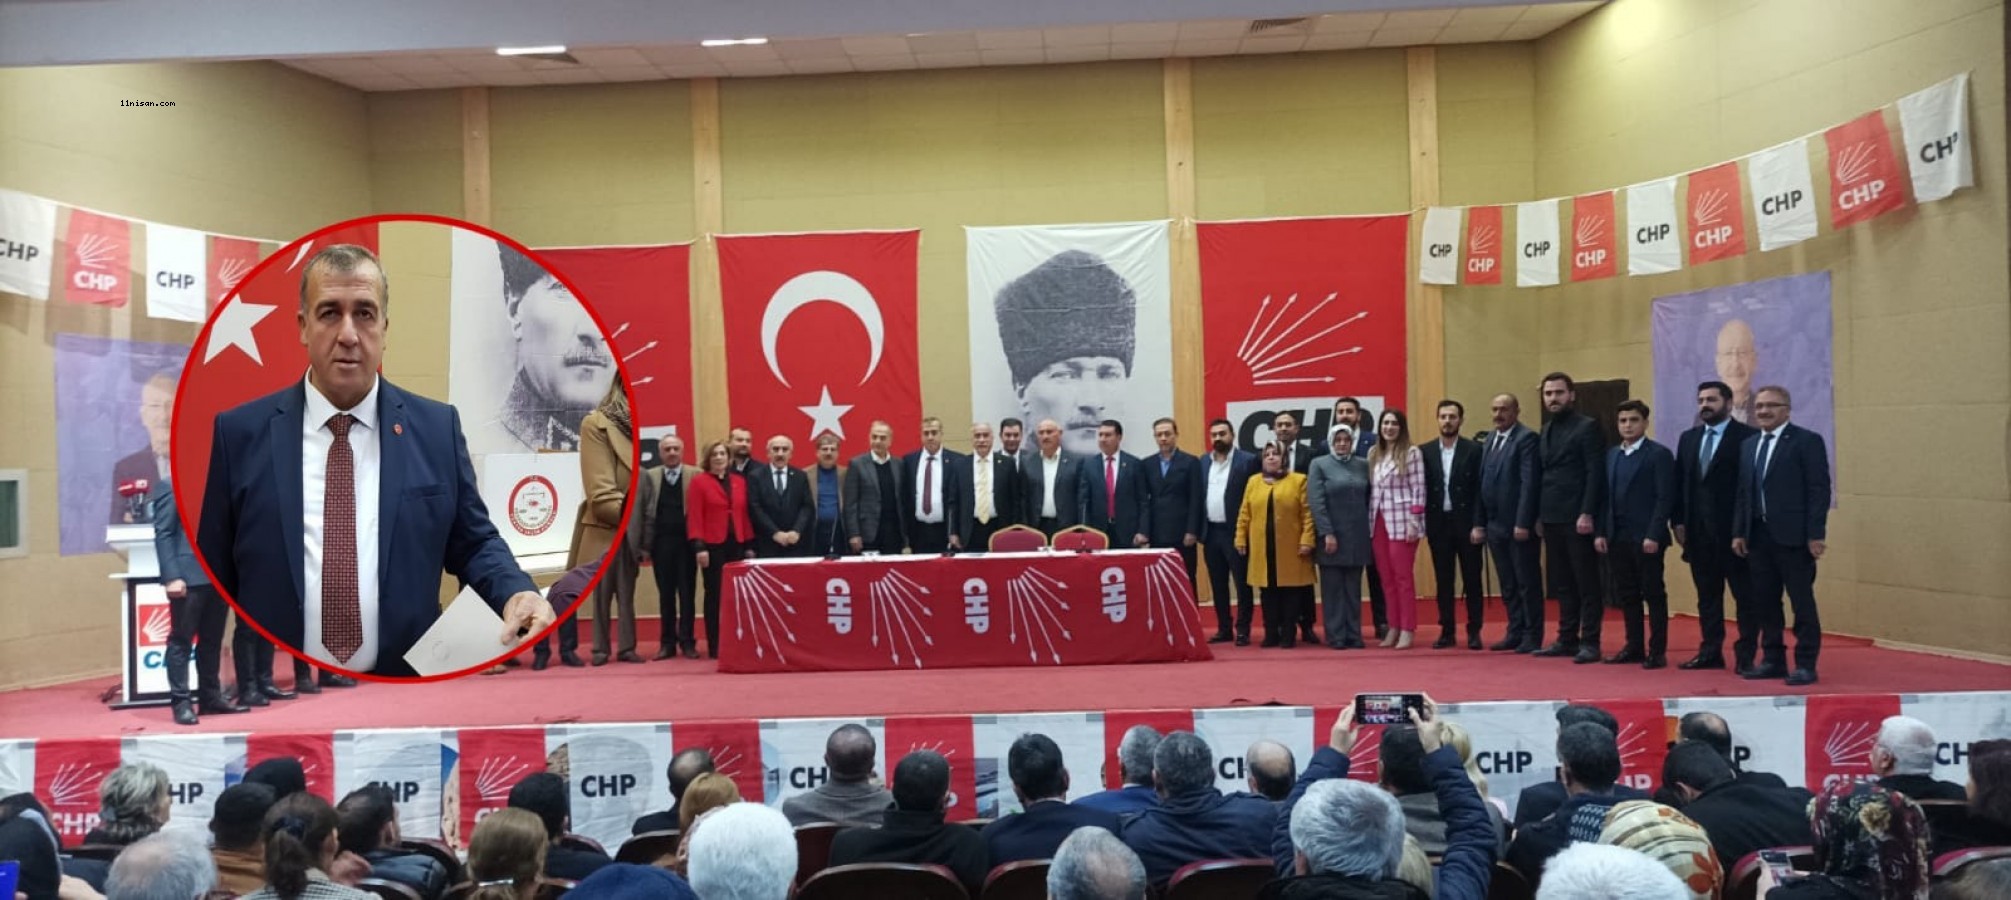 CHP Şanlıurfa İl Başkanı belli oldu!;